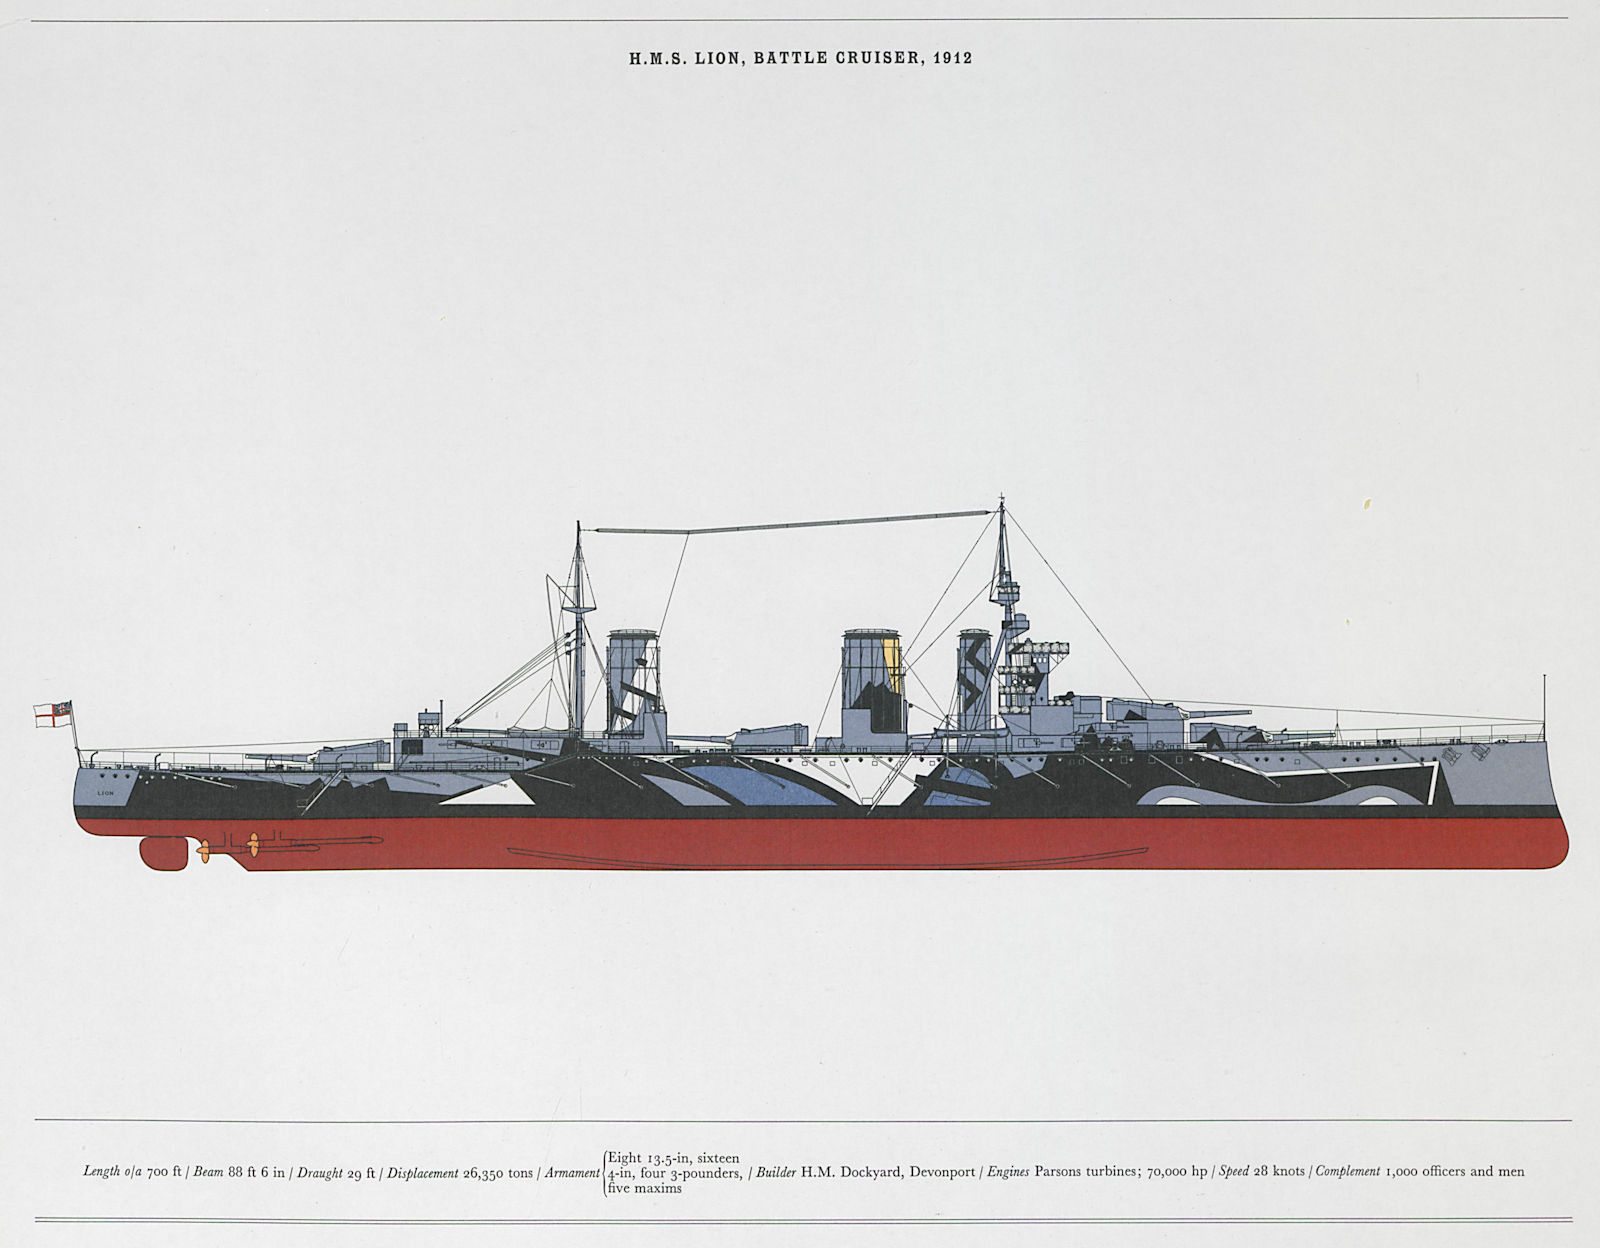 H.M.S. Lion Battle, Battle Cruiser, 1912. Royal Navy warship. HOLBROOK 1971